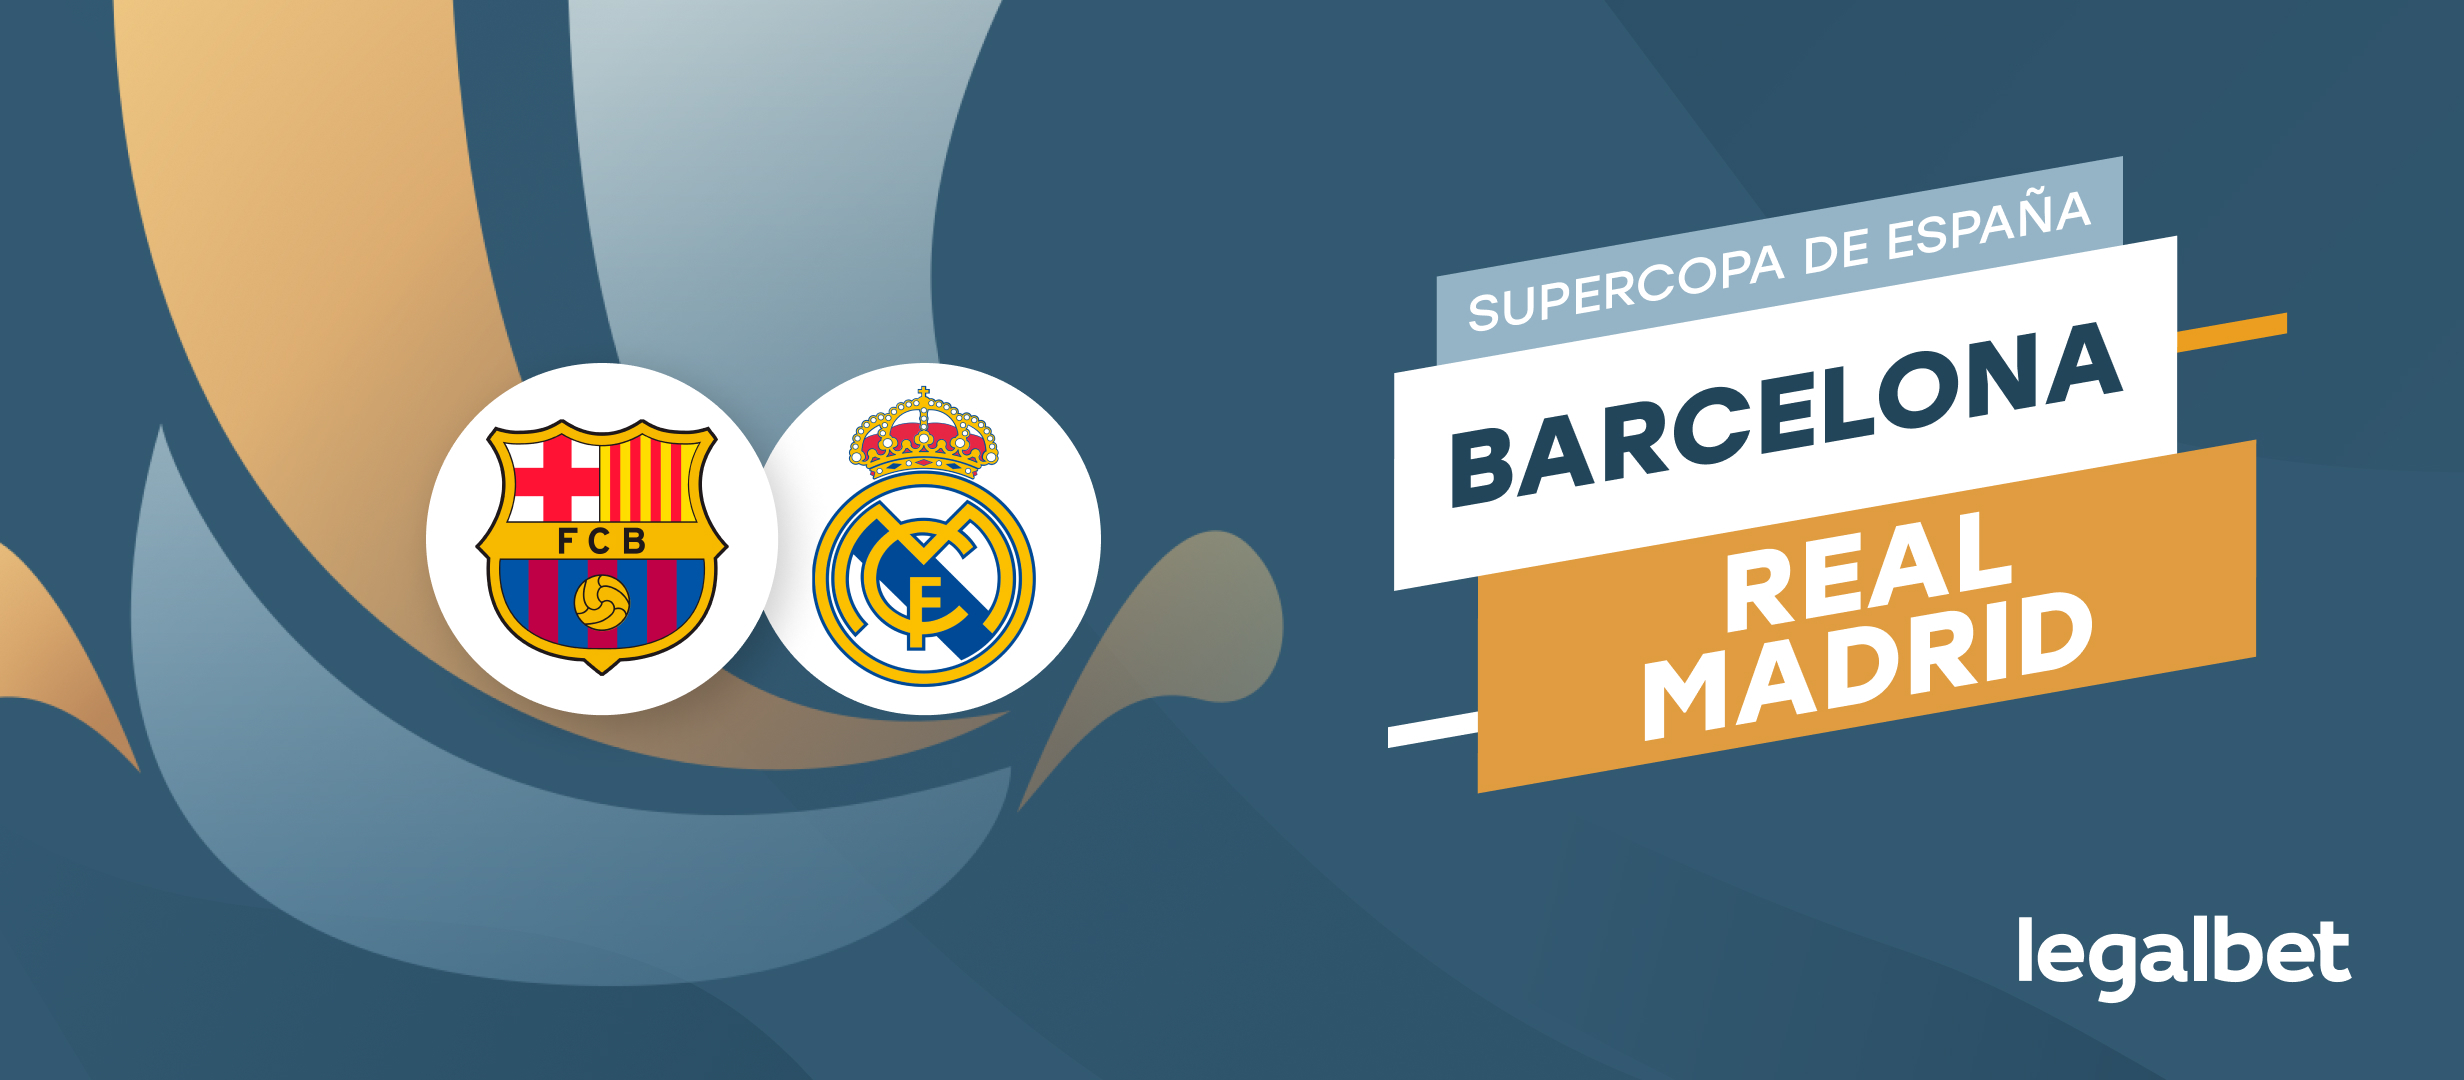 Apuestas Barcelona - Real Madrid, Supercopa de España 2021/22